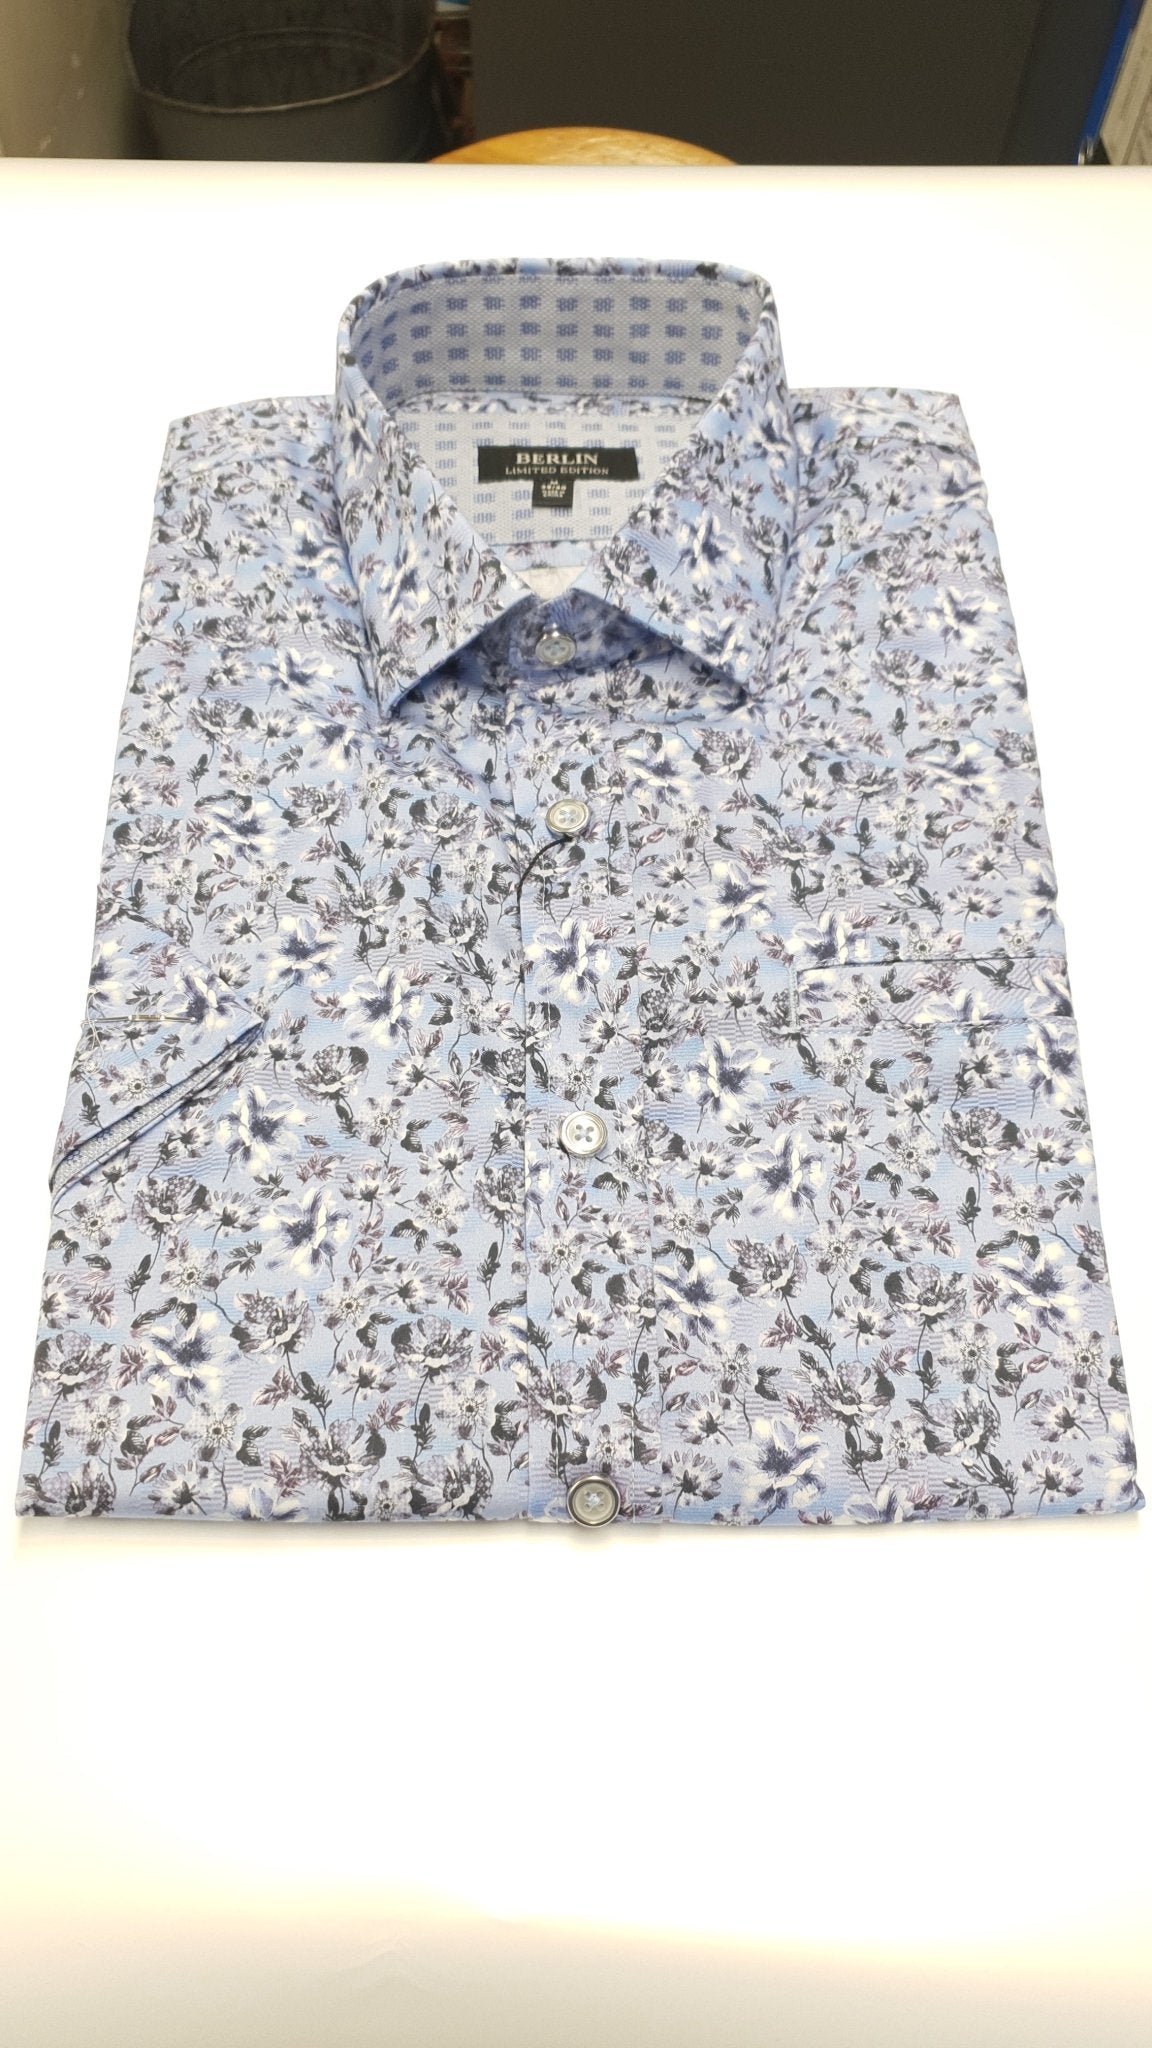 Berlin S22 Floral Shirt - Thomson's Suits Ltd - Blue - M - 64181